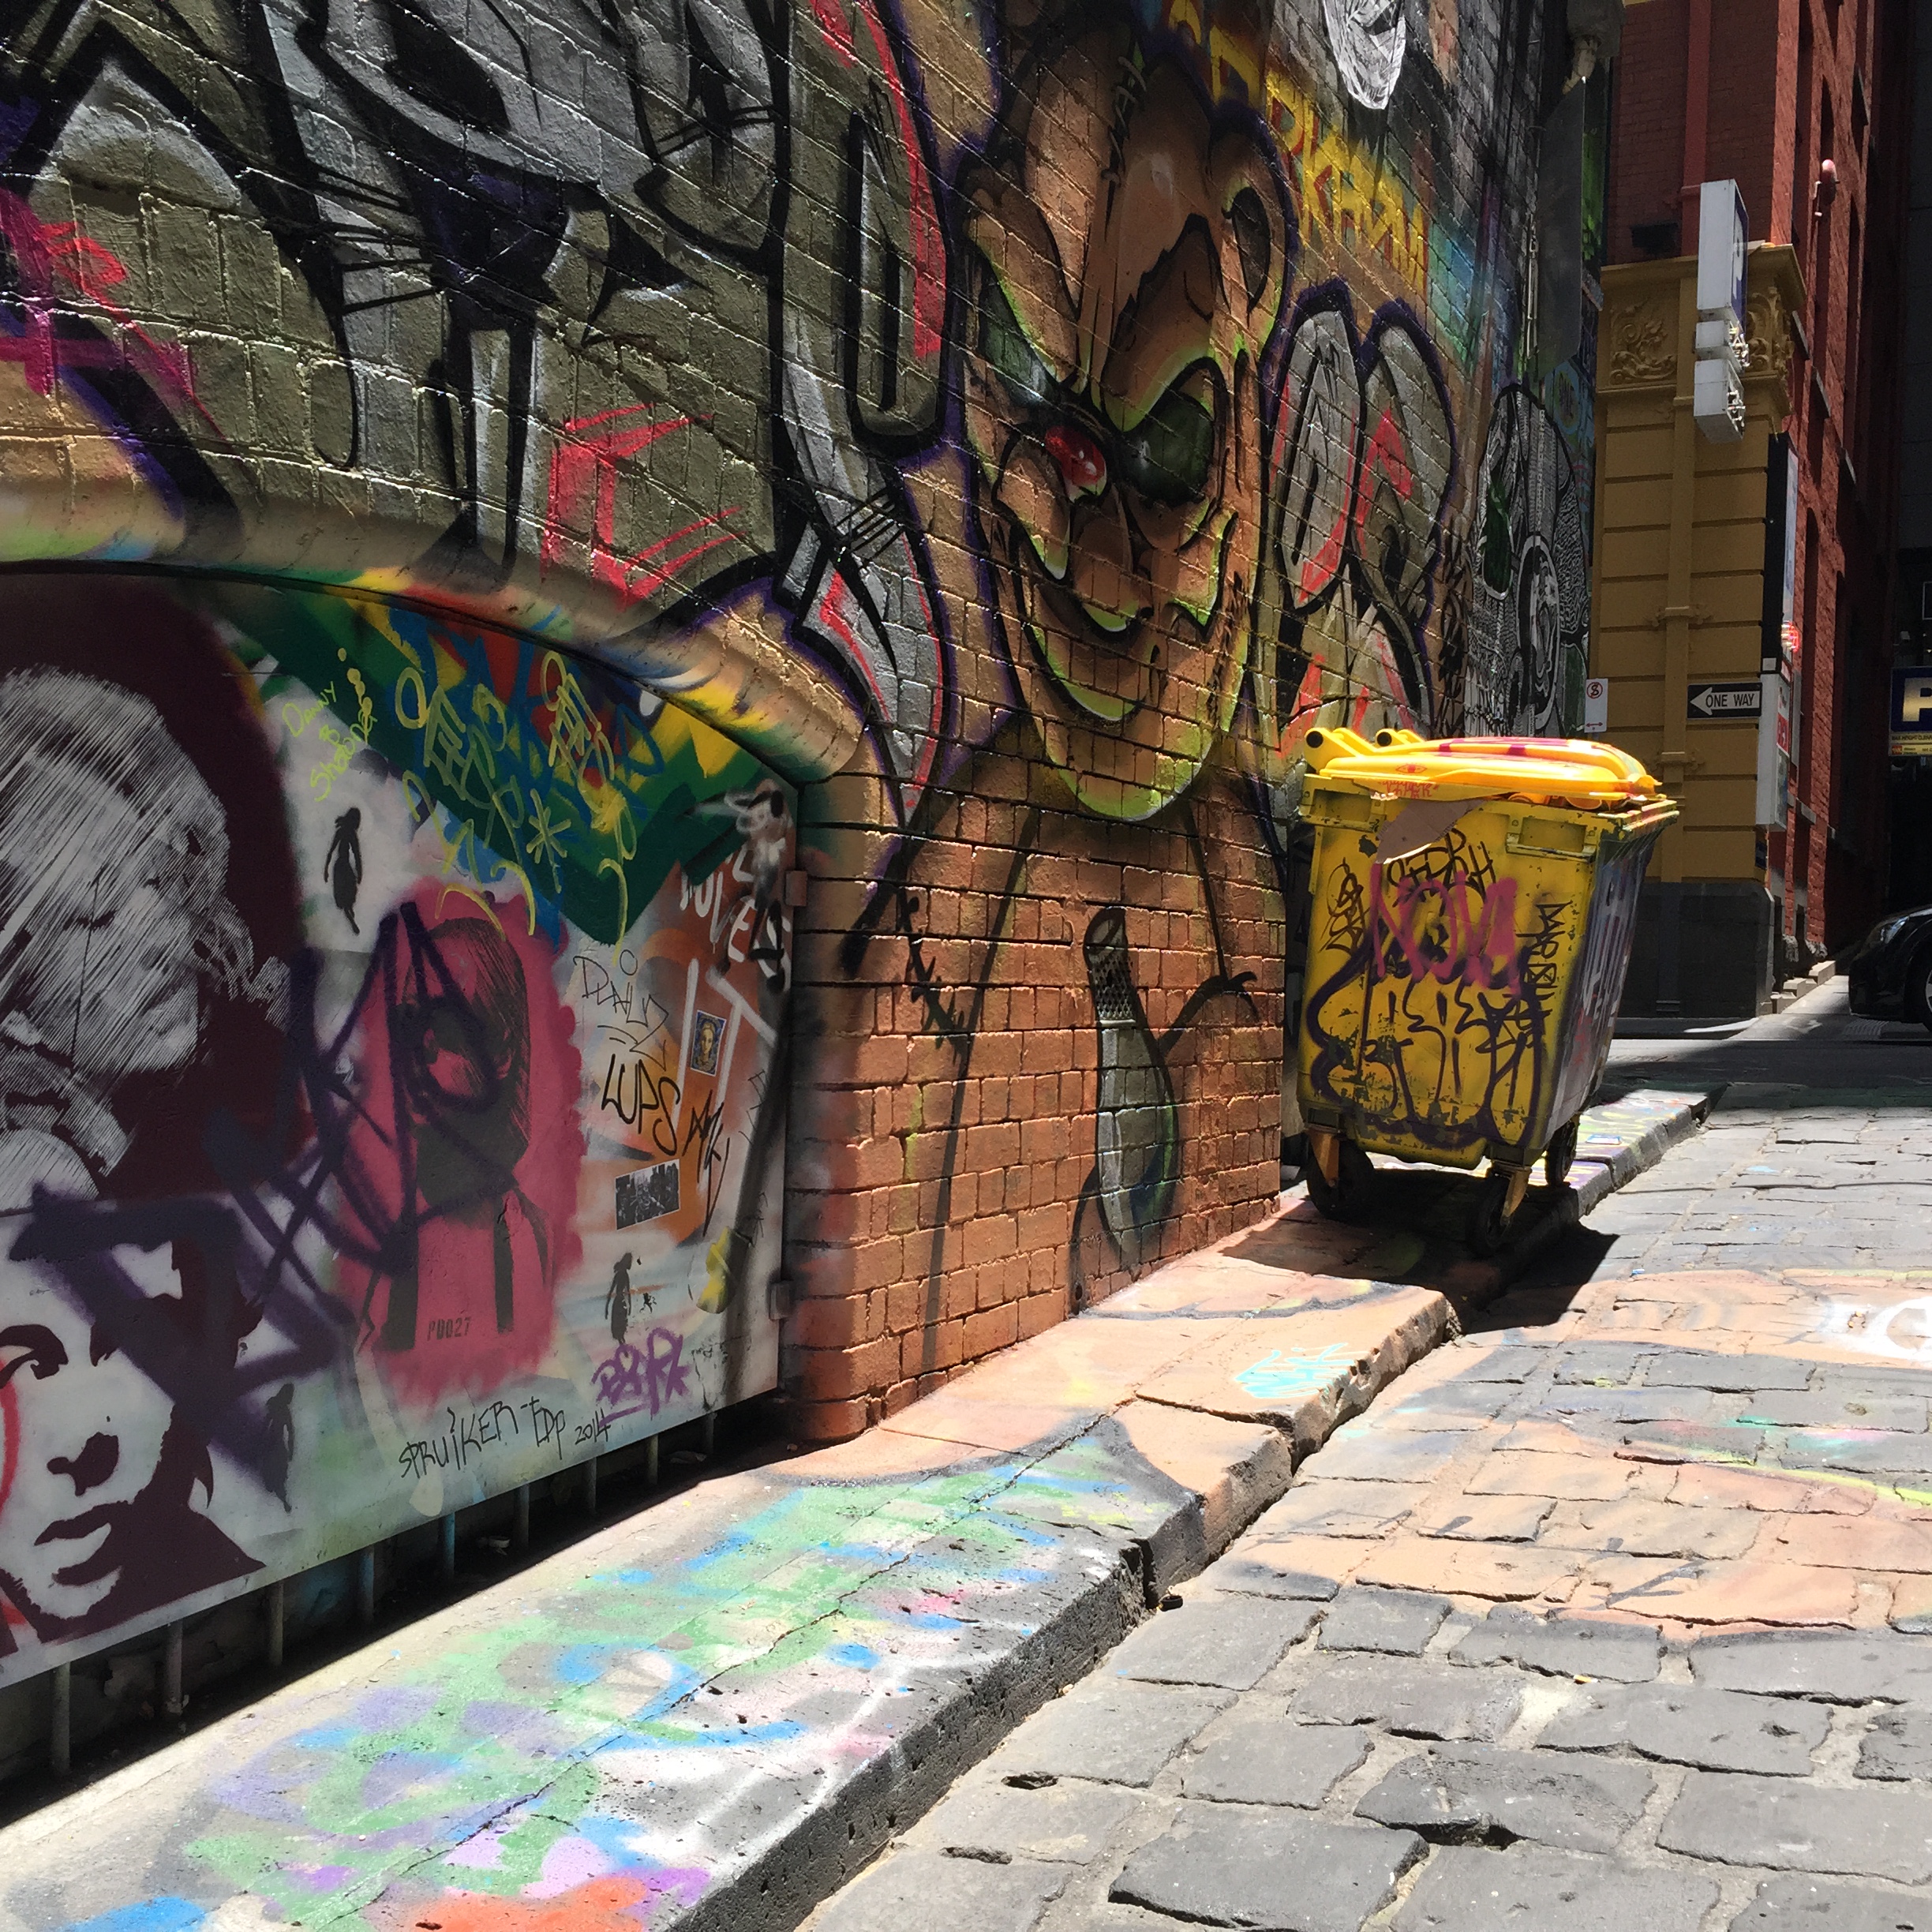 Graffiti Hosier Lane, Melbourne